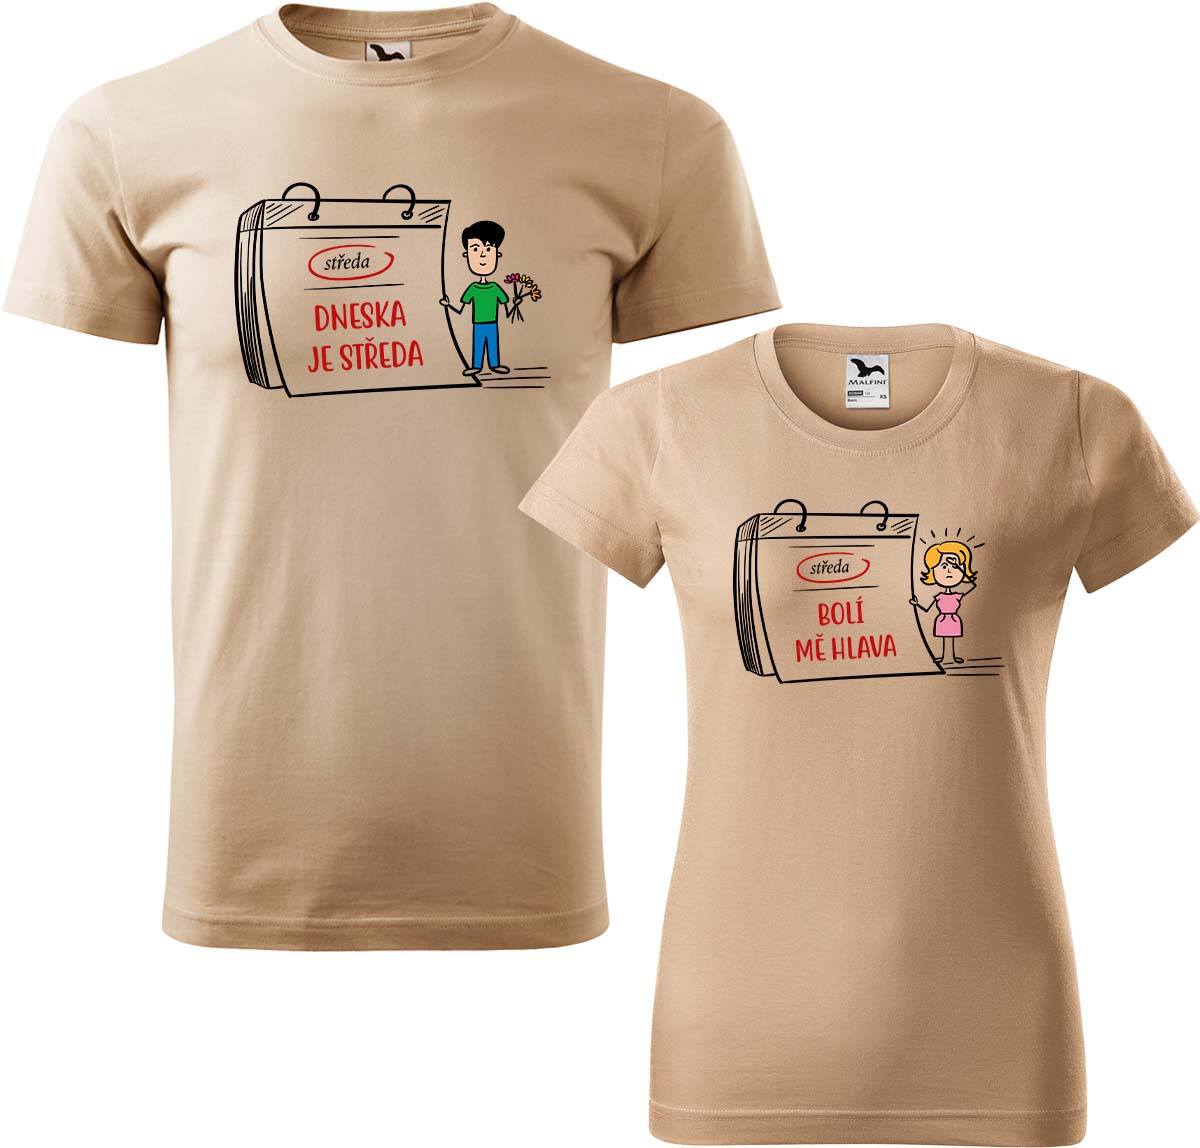 Trička pro páry - Dneska je středa Barva: Písková (08), Velikost dámské tričko: XL, Velikost pánské tričko: 4XL